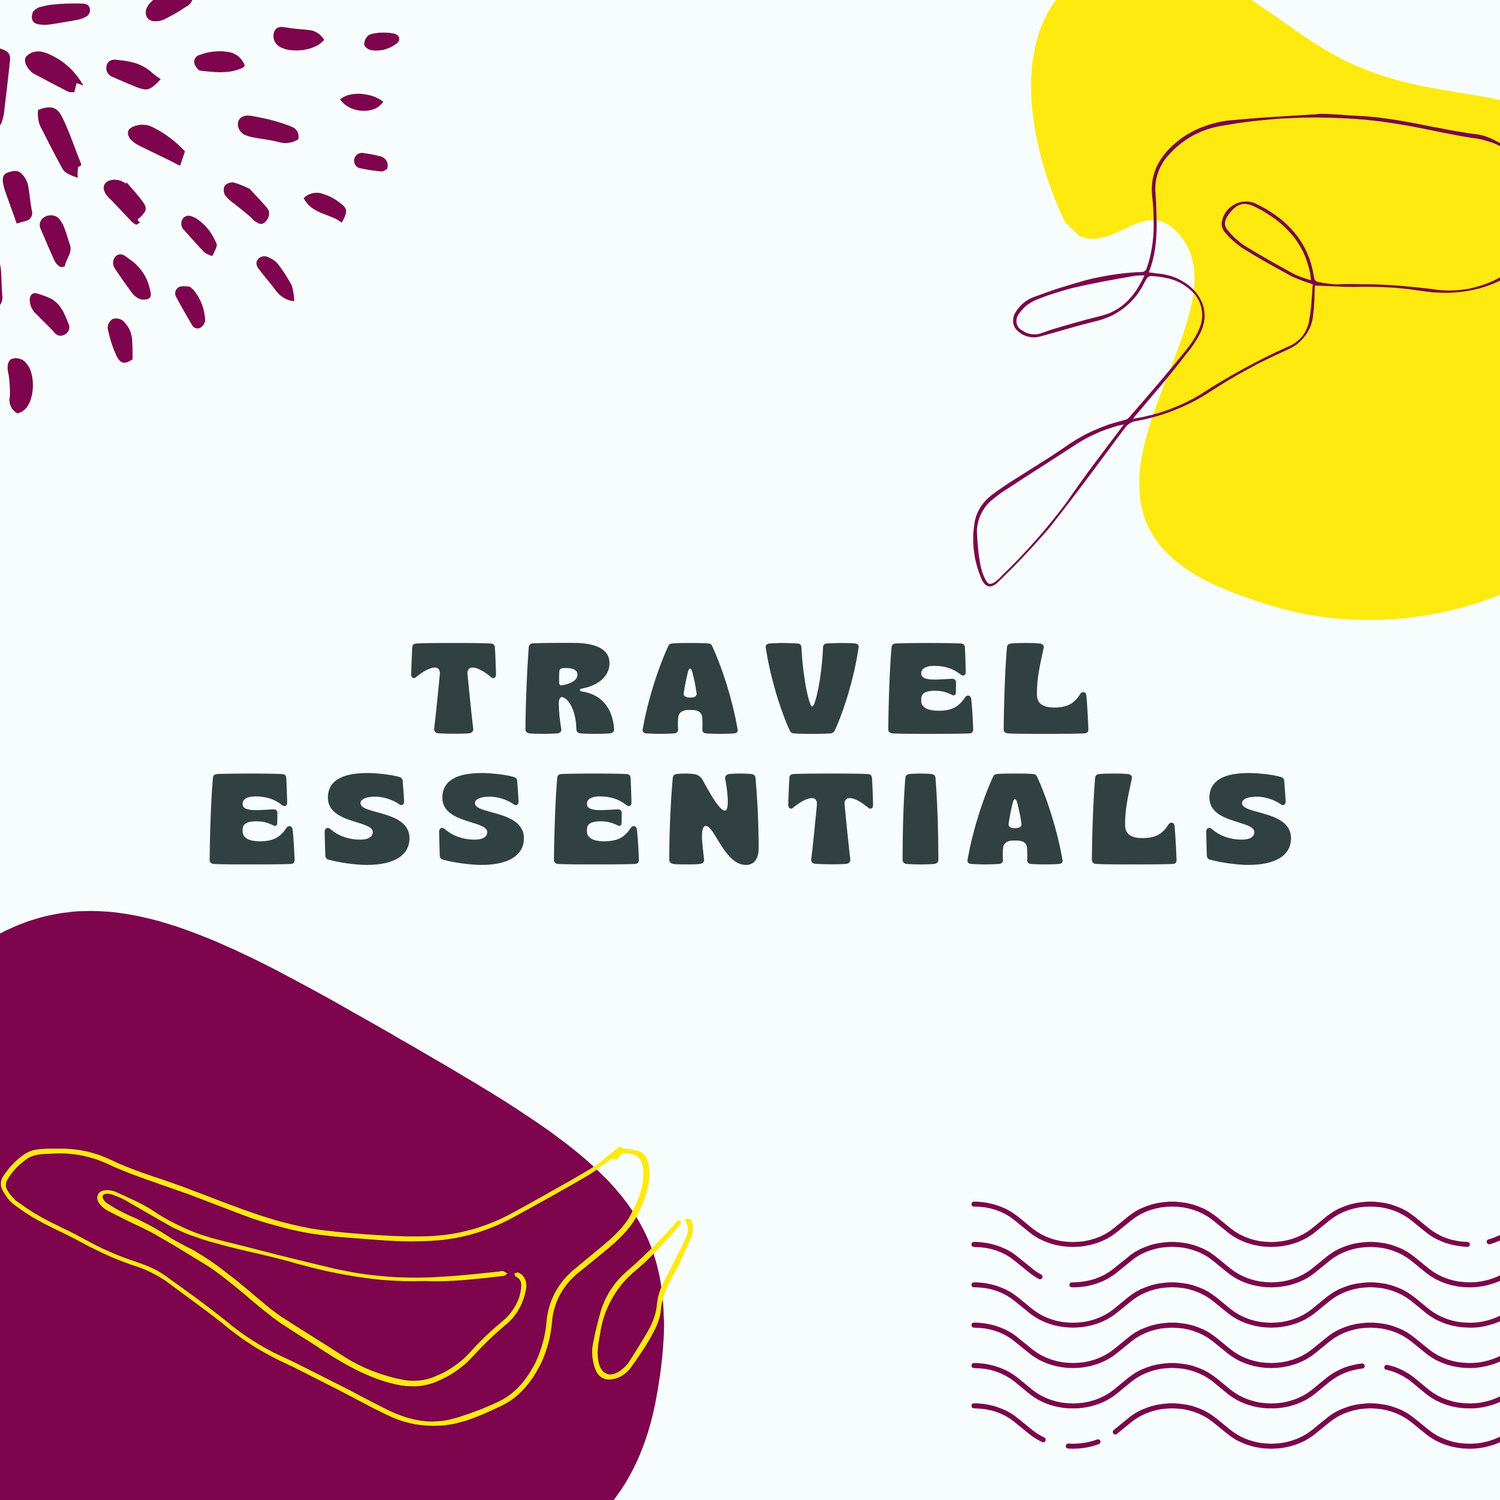 Travel Essentials